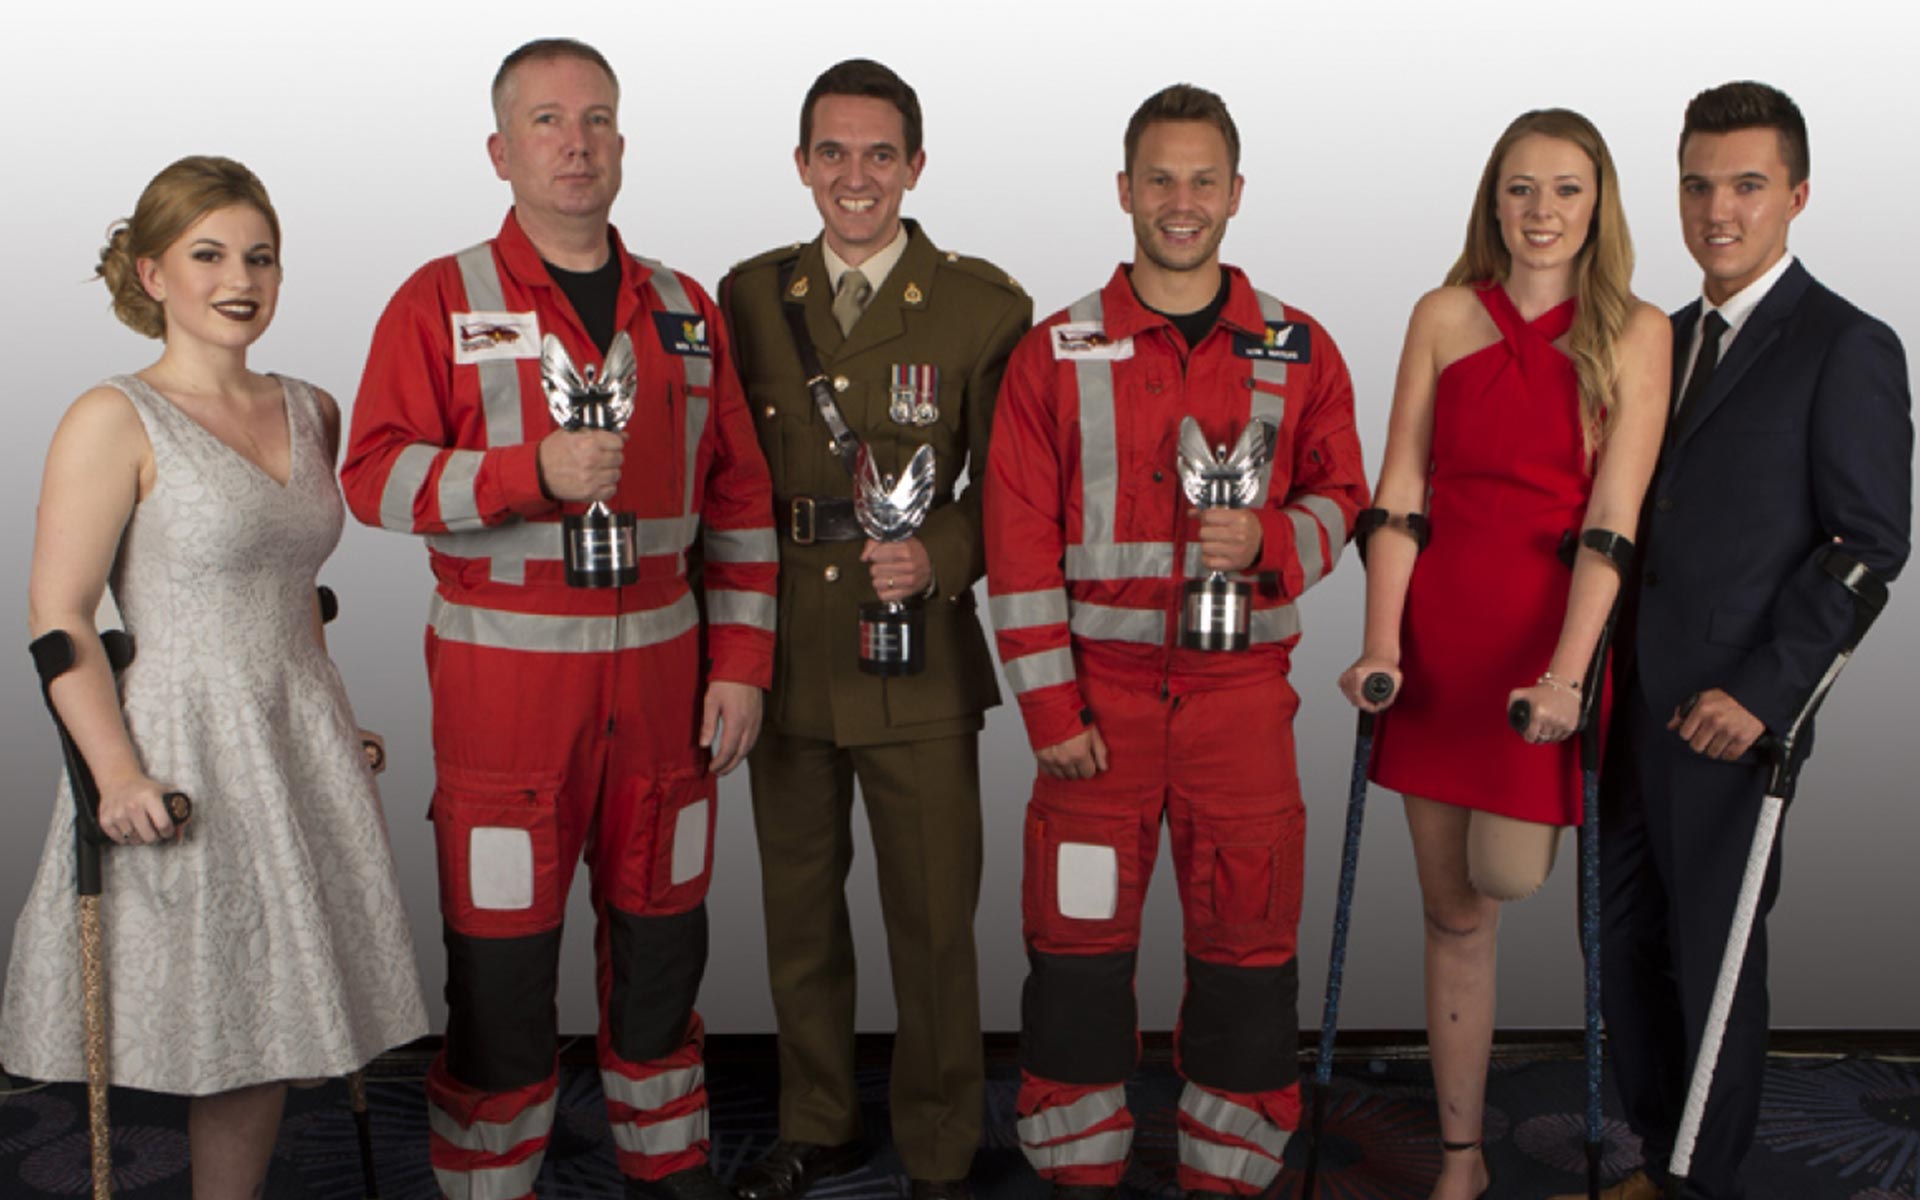 Emergency Services - Major David Cooper, Ben Clark and Tom Waters